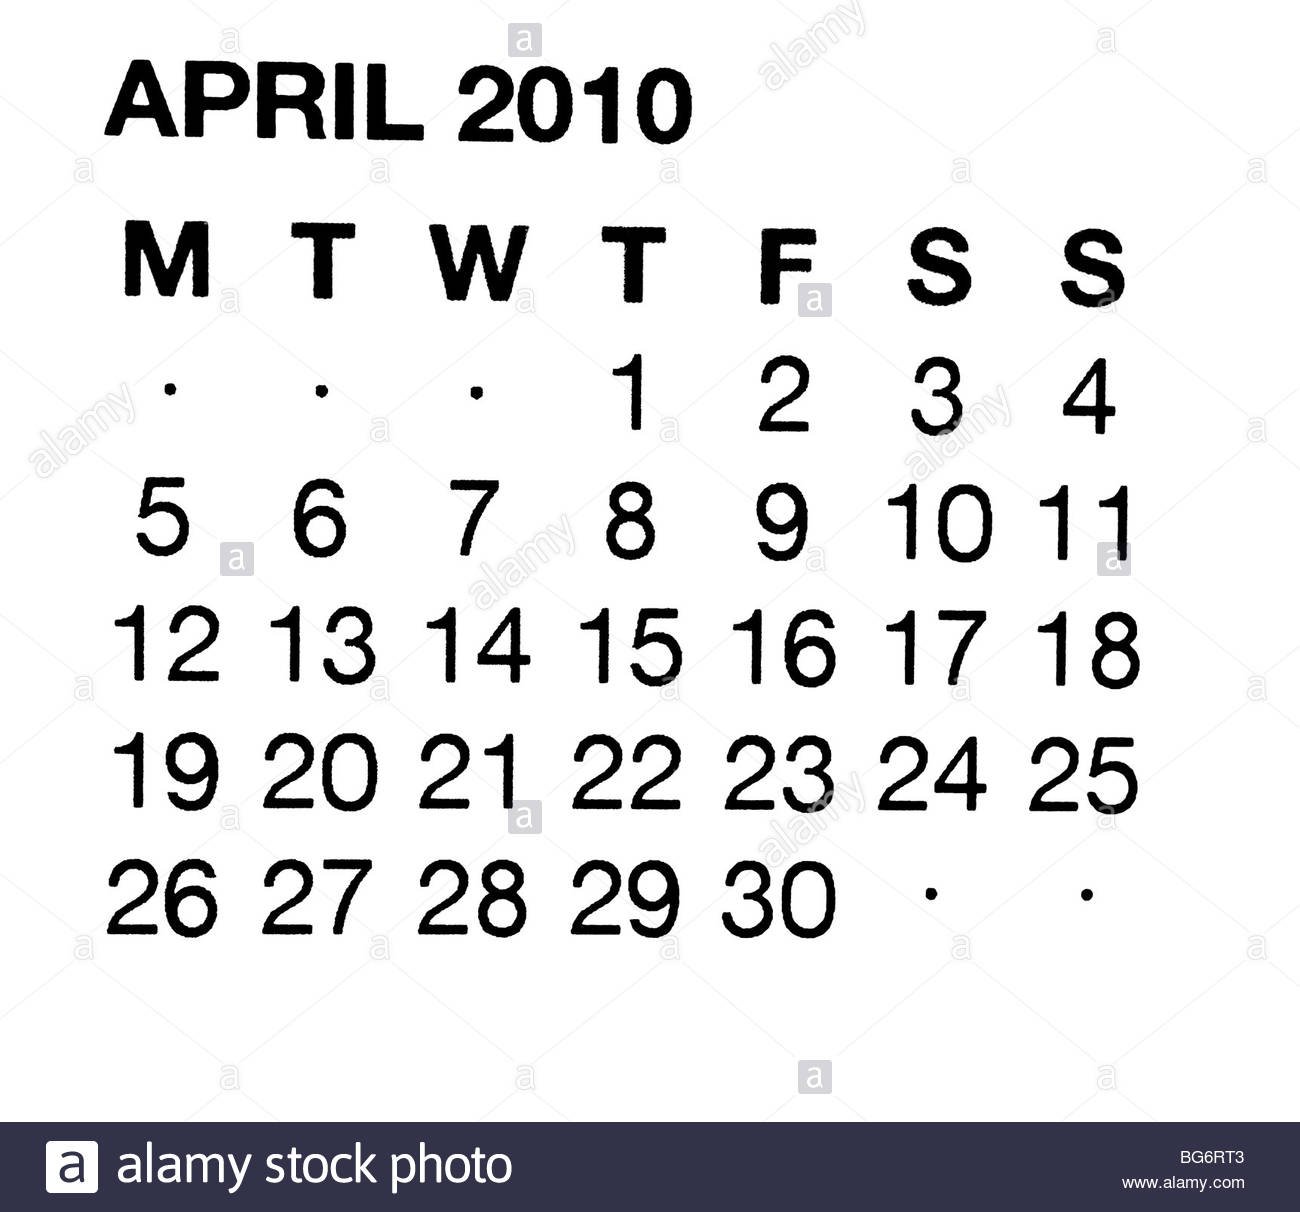 April 2010 calendar Stock Photo